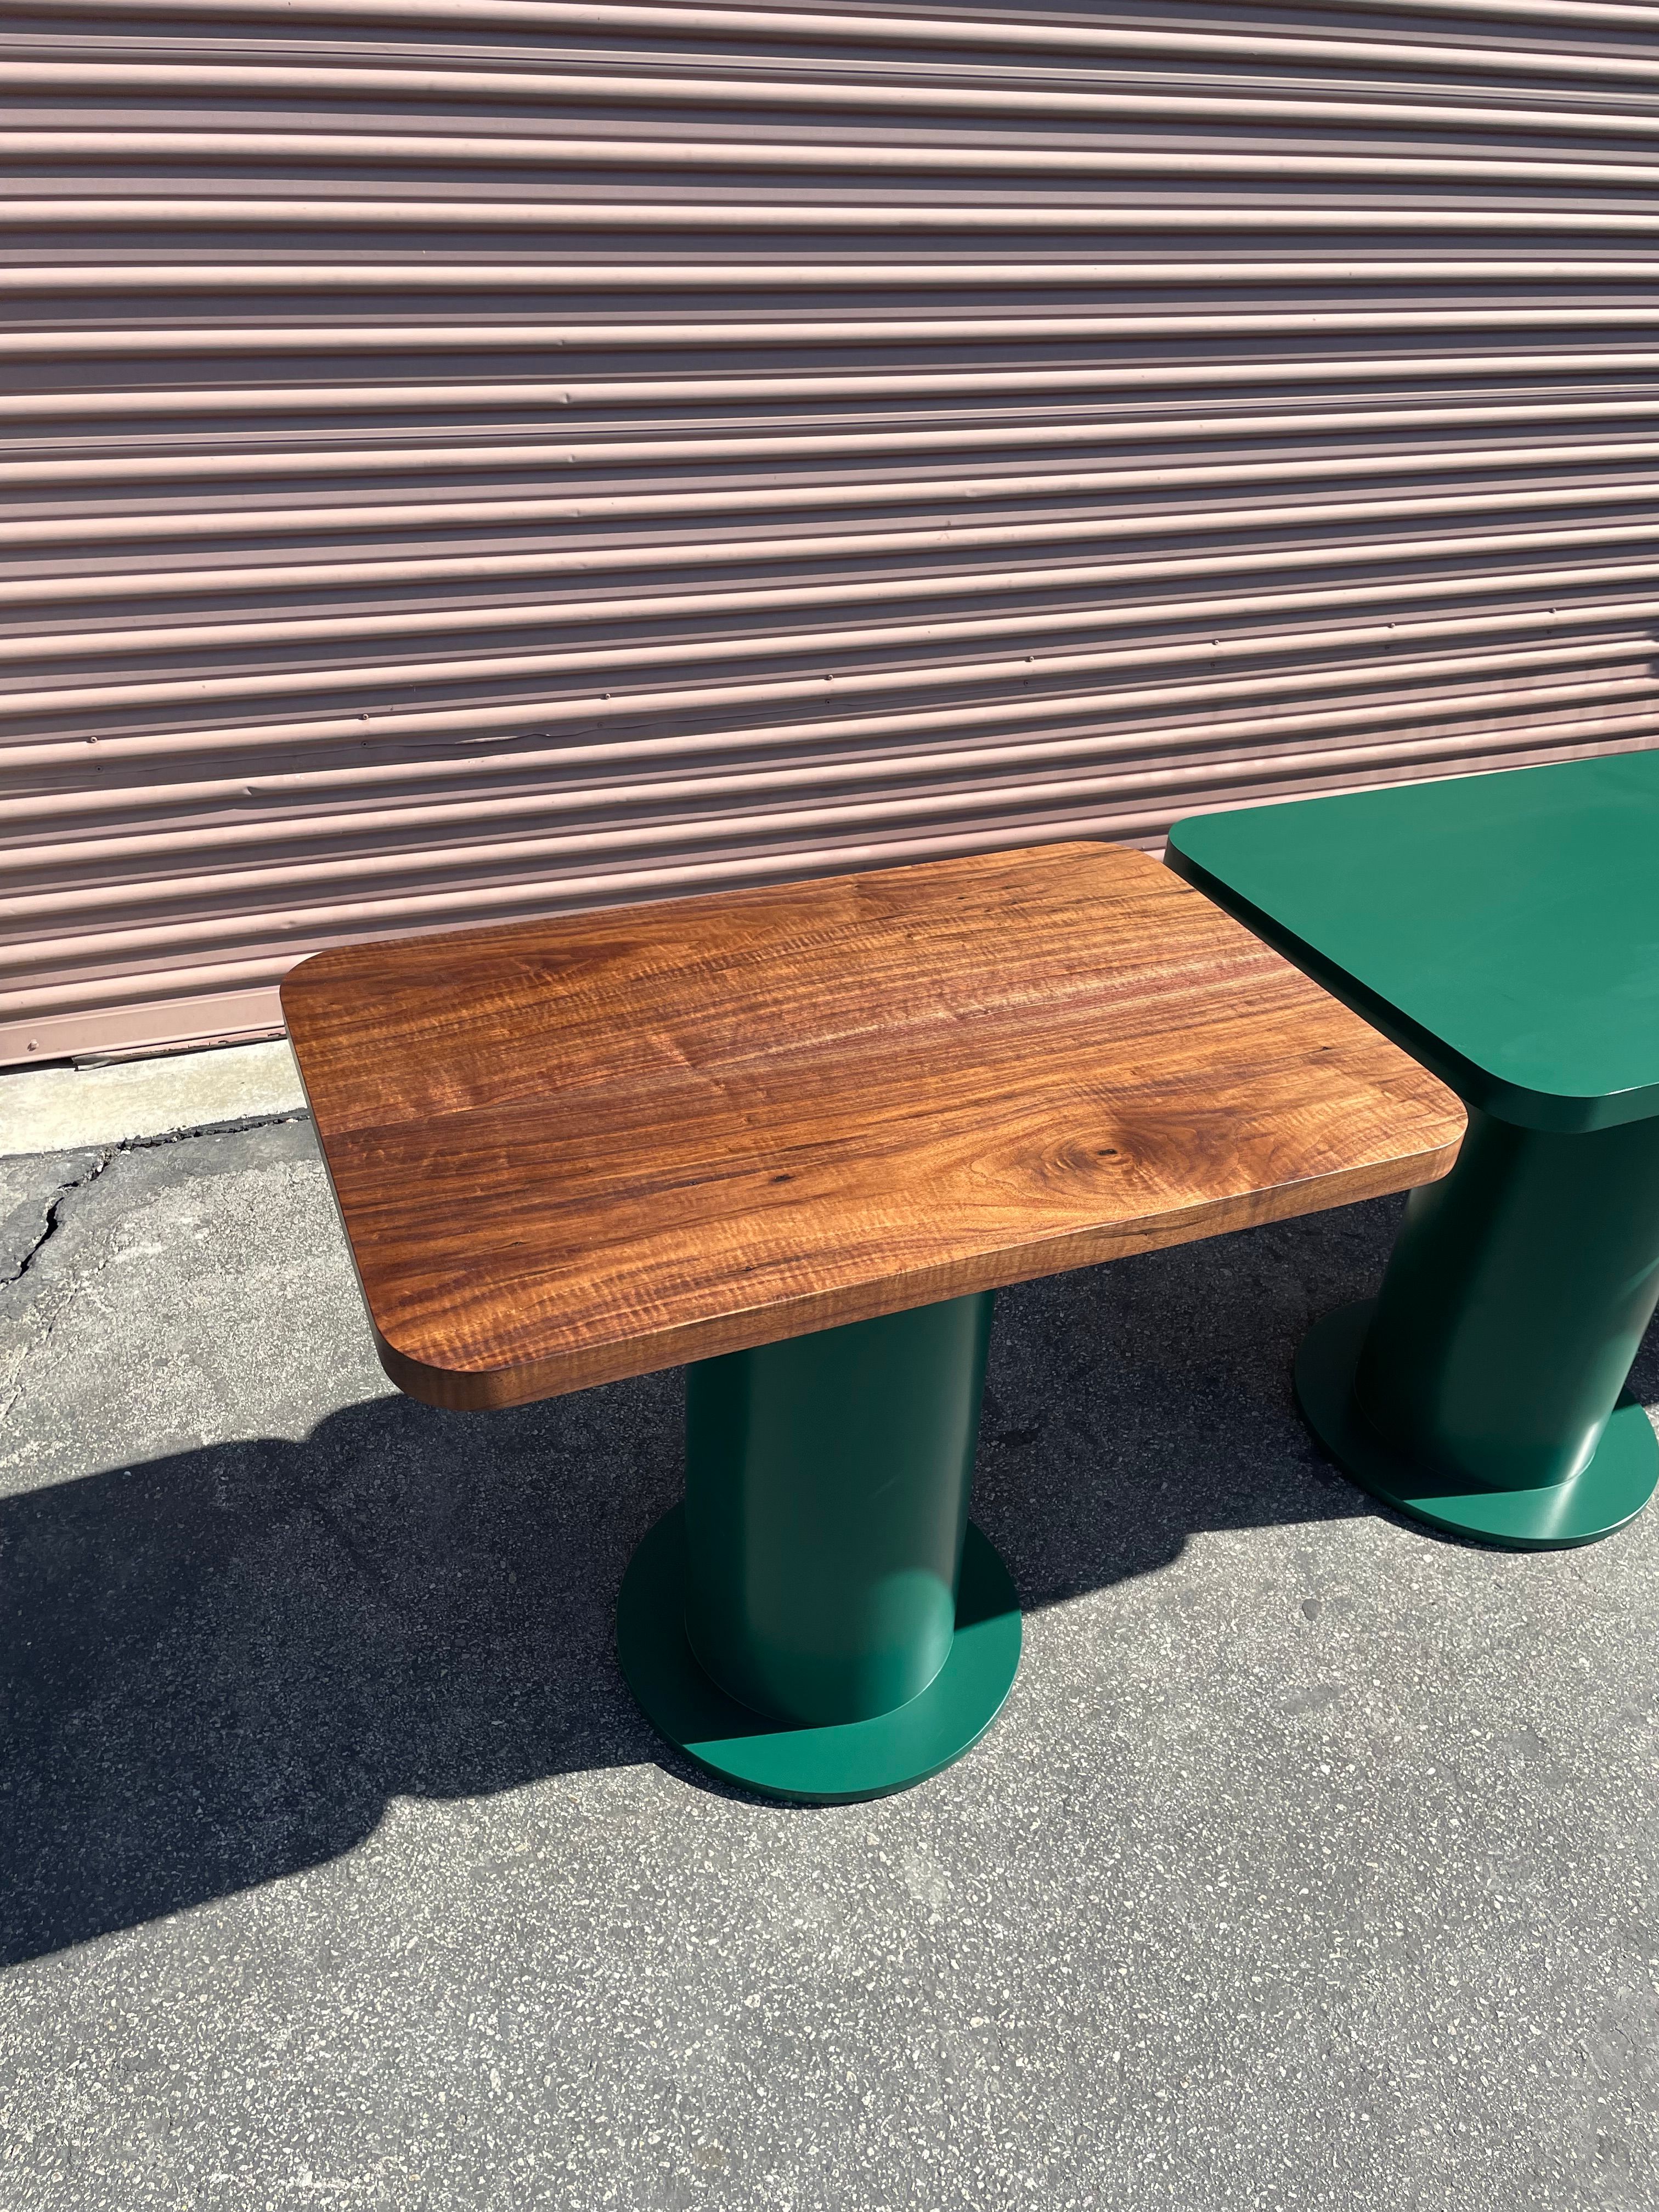  Pedestal Tables - Folklor LA product image 2